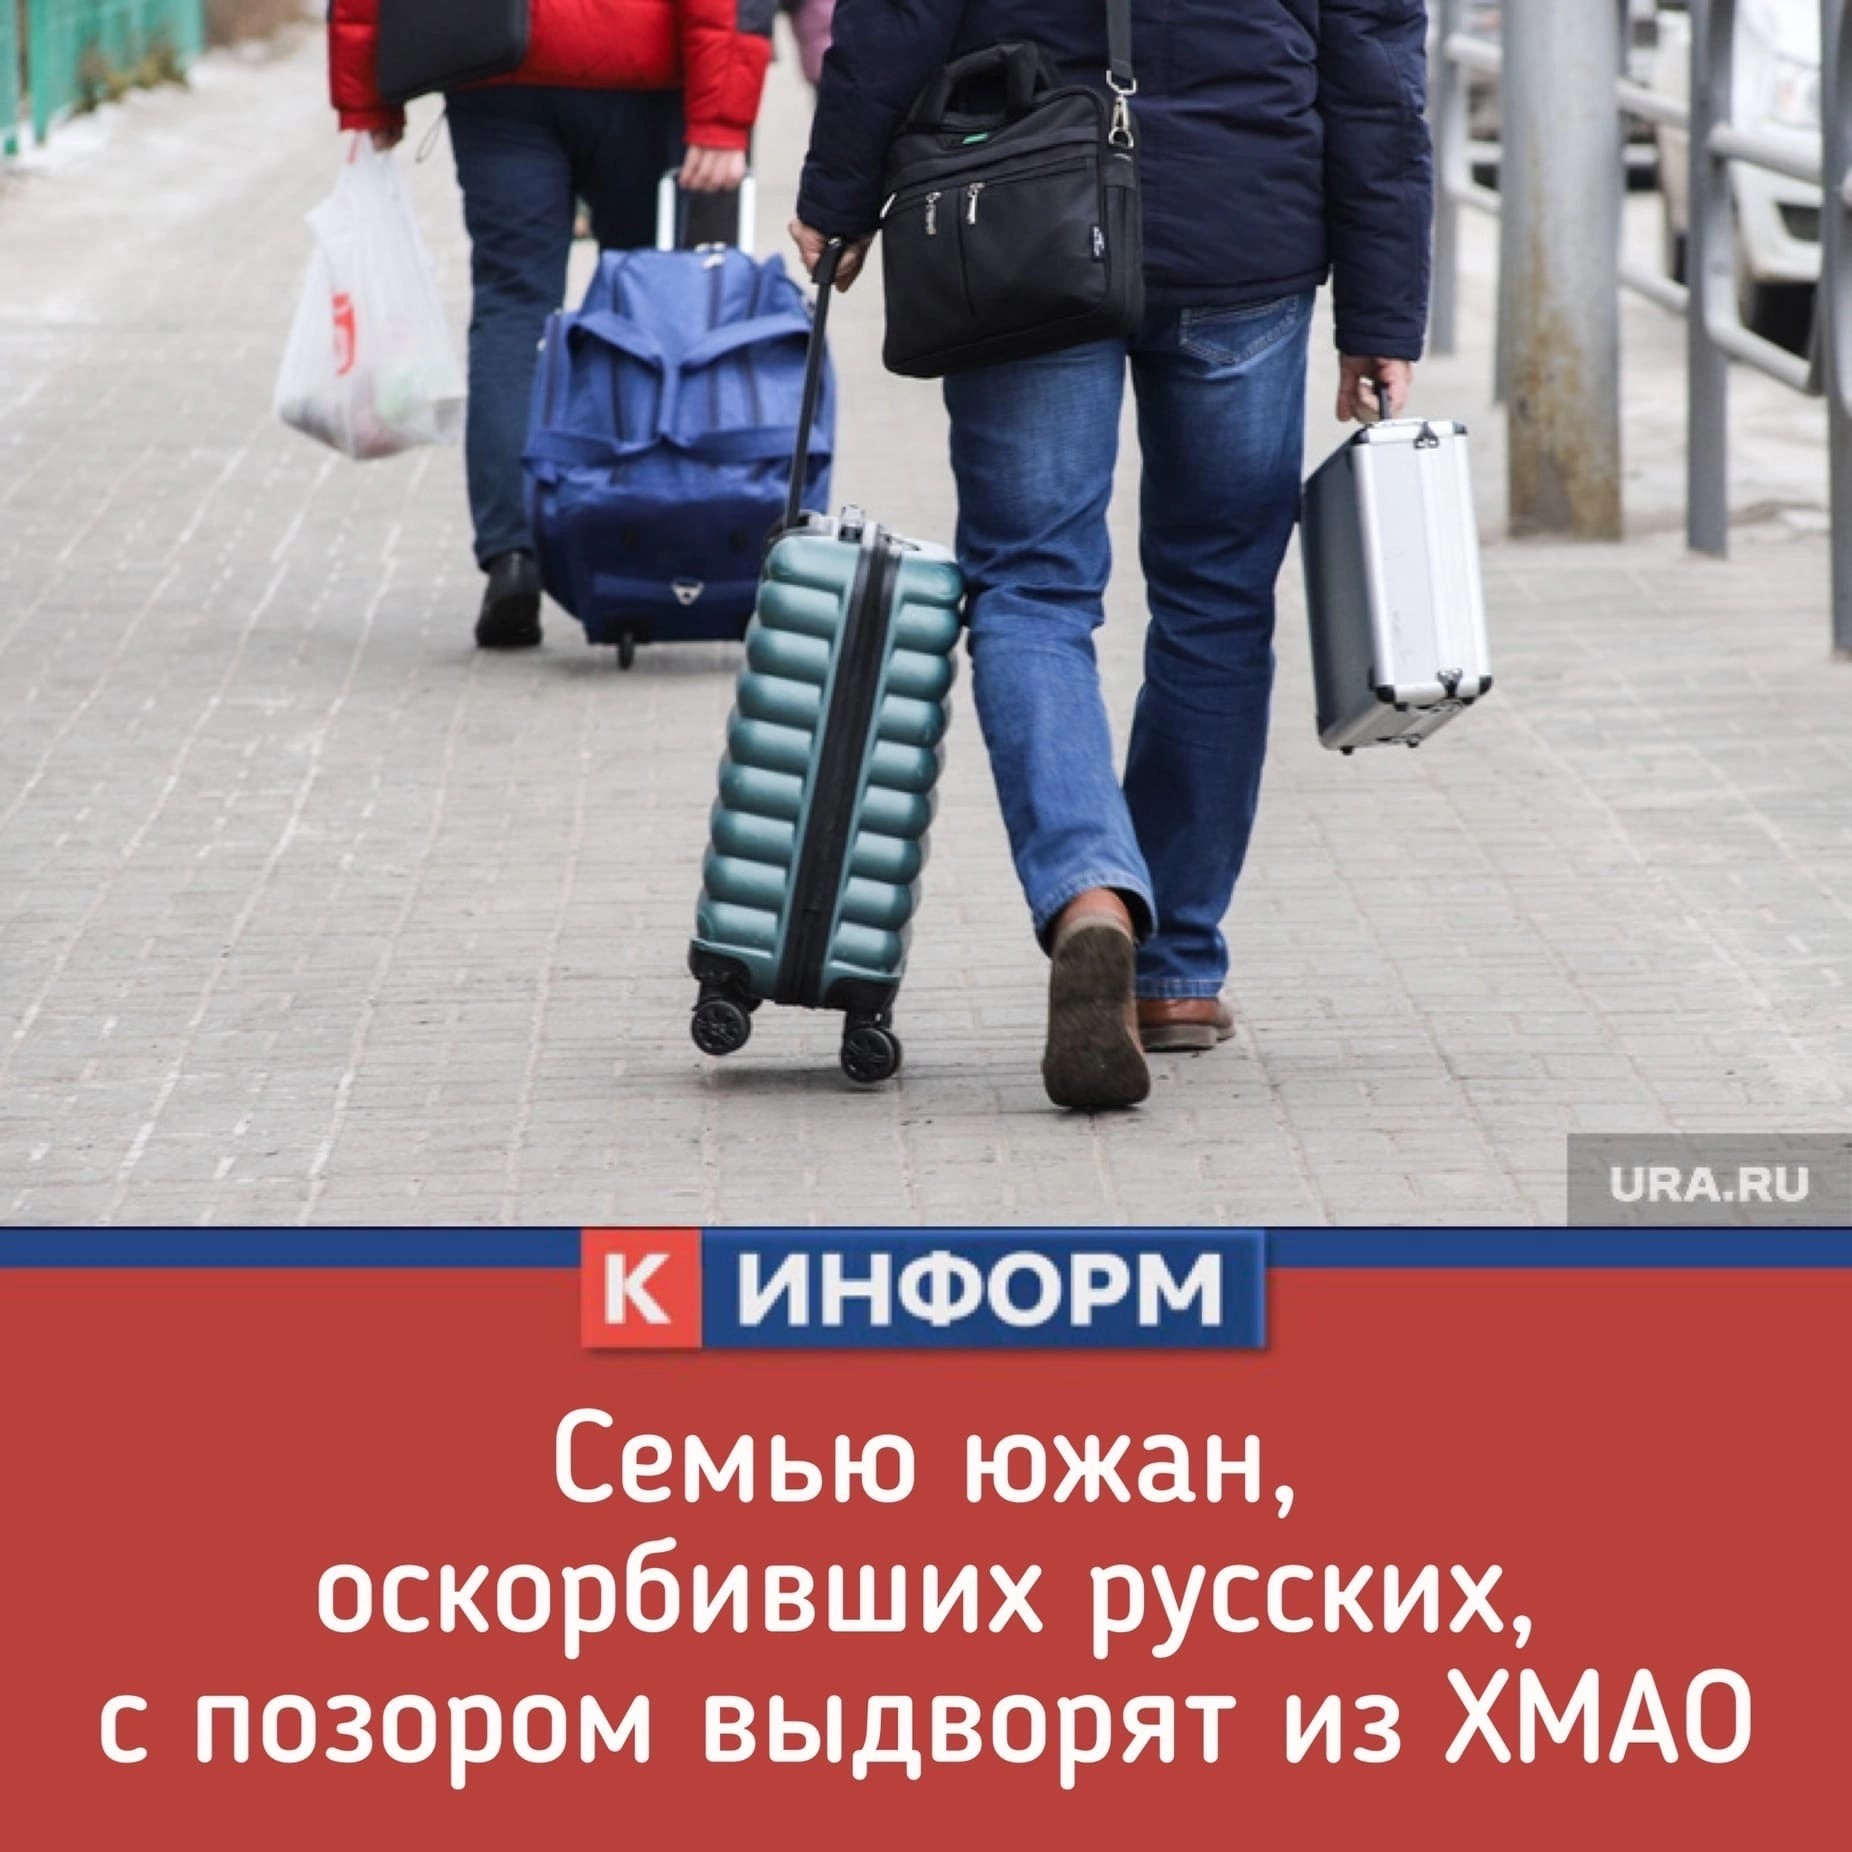 Иностранцы уехали. Мигранты с чемоданами. Иностранцы в России, чемоданами. Уехавшие из России. Отток населения.